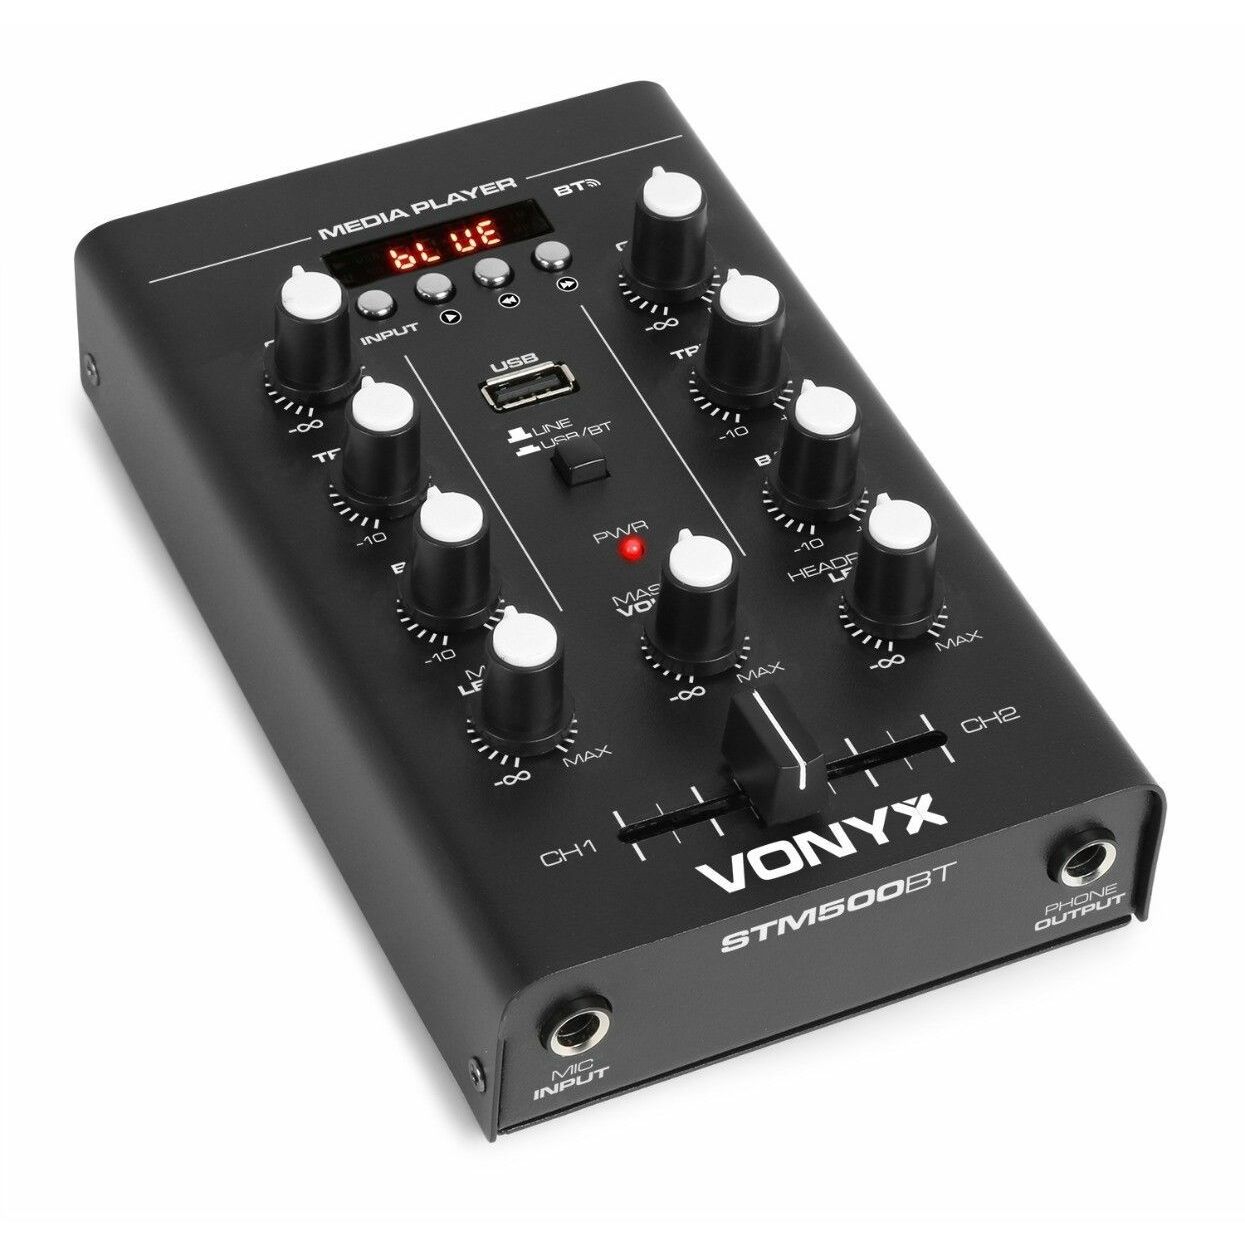 Retourdeal - Vonyx STM500BT 2-kanaals mixer met Bluetooth en mp3